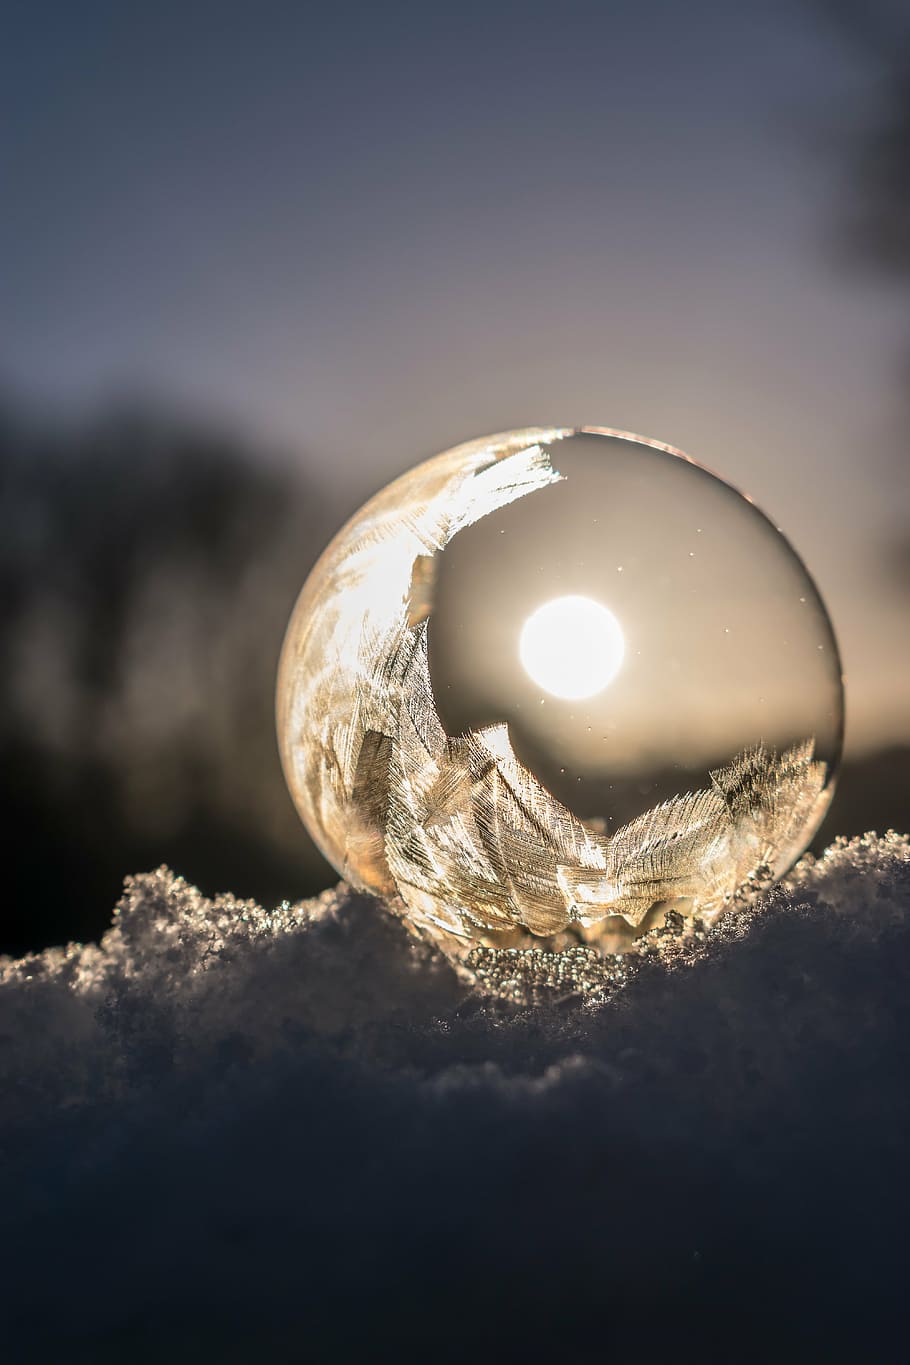 claro, fotografia de bola, nascer do sol, bolha de sabão, congelado, bolha congelada, inverno, frio, neve, bola